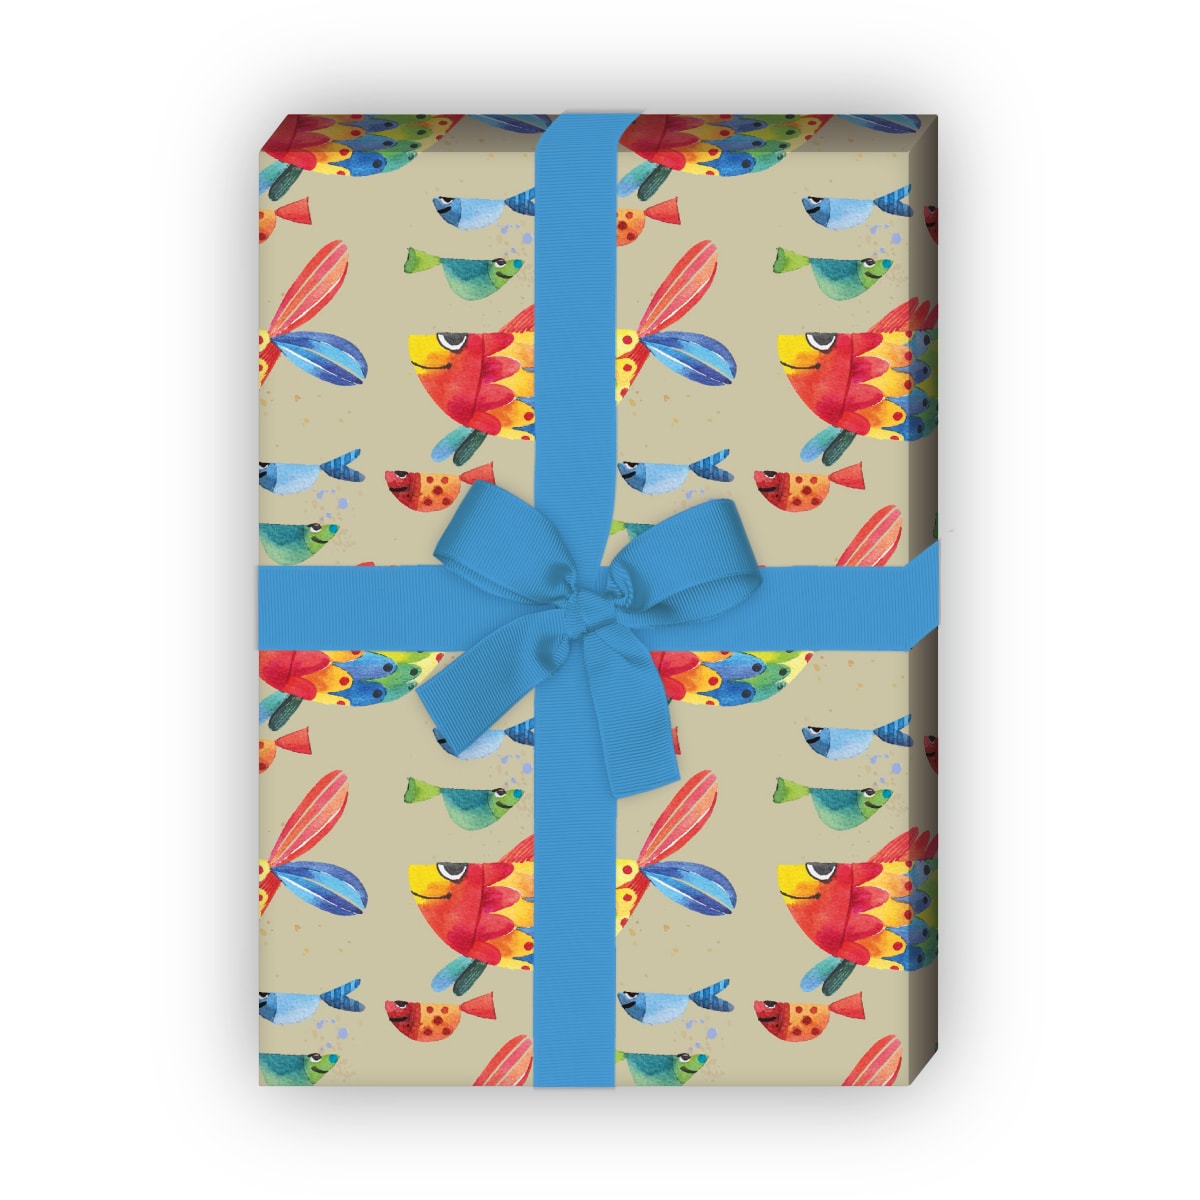 Kartenkaufrausch: Lustiges Geschenkpapier mit Regenbogen aus unserer Tier Papeterie in beige